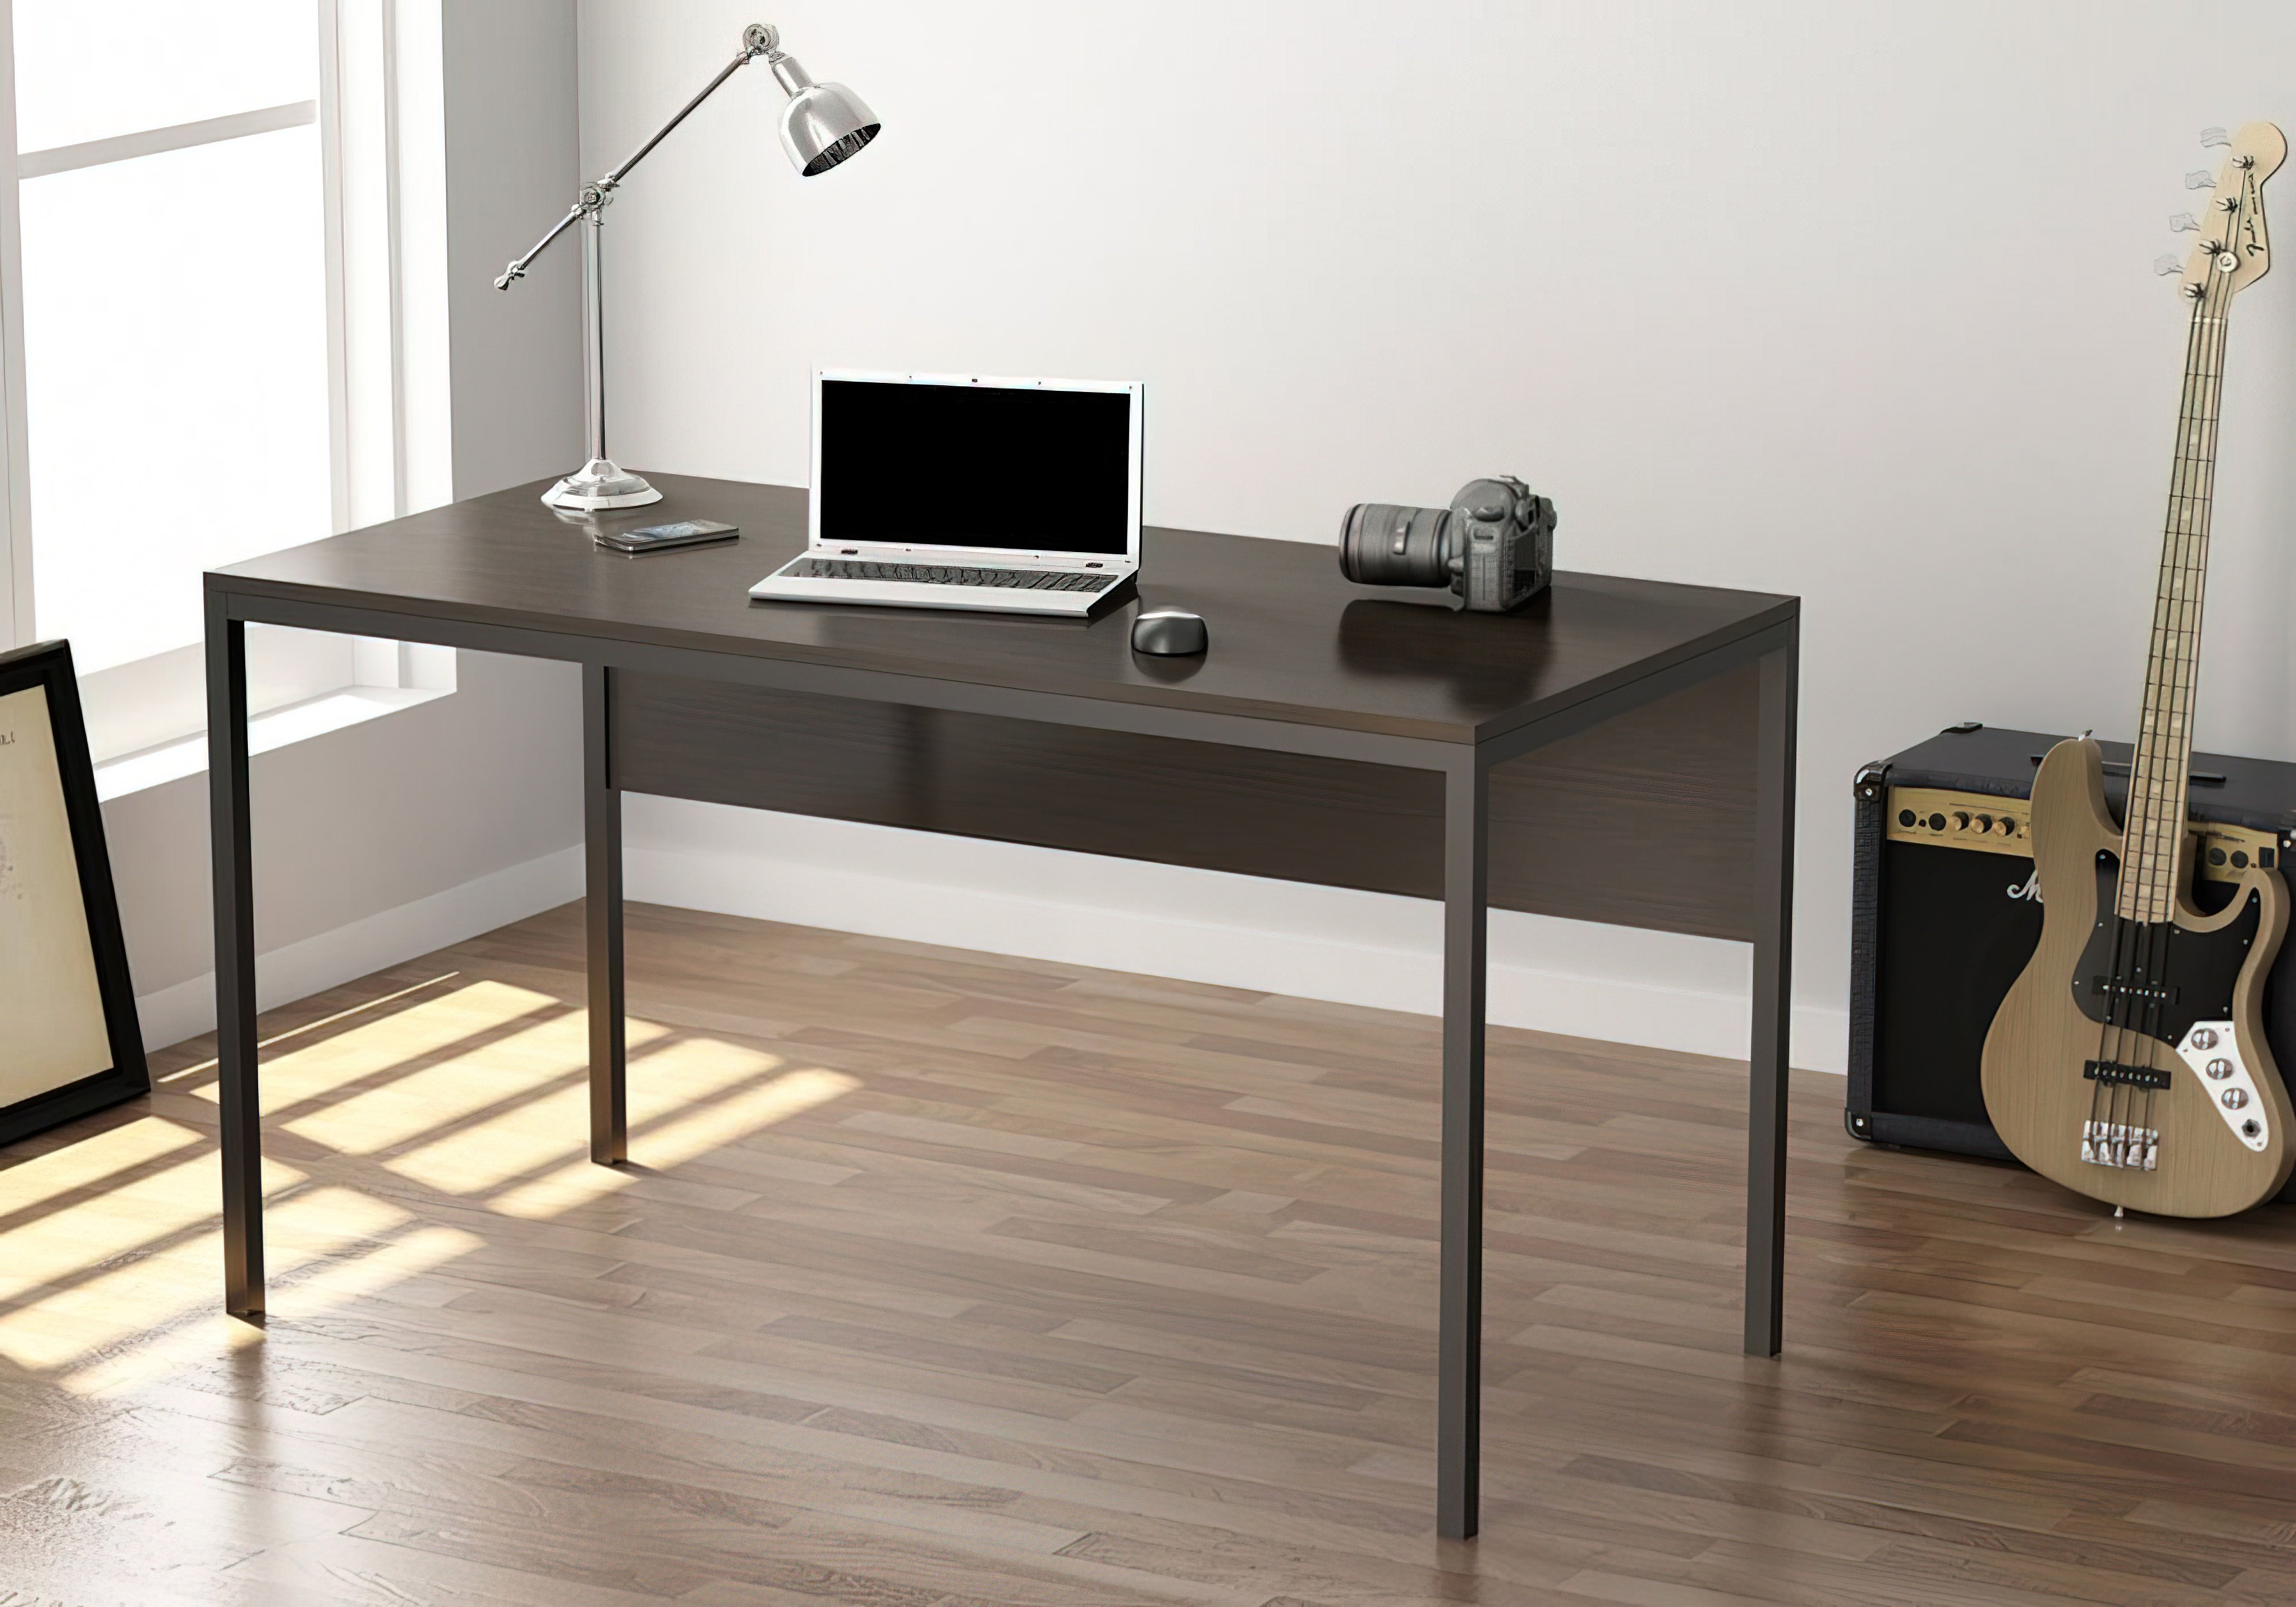  Купить Офисные столы Стол офисный "L-2p" Loft Design